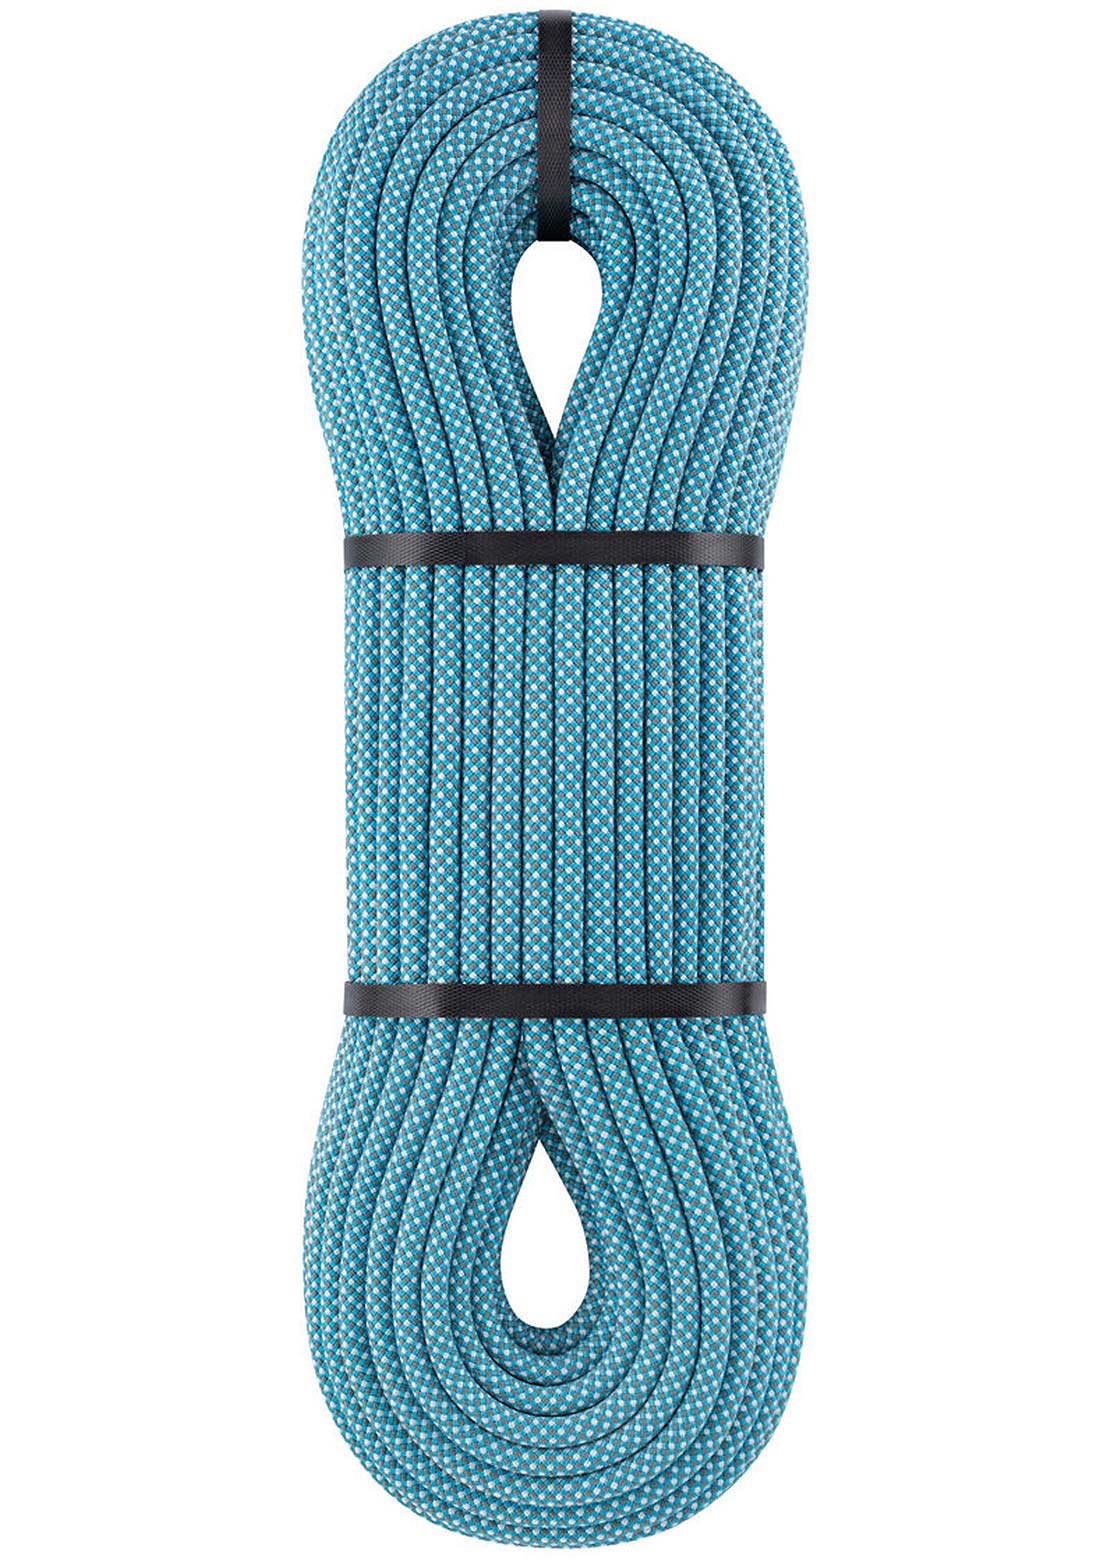 Petzl Mambo 10.1mm Climbing Rope - 70m Turquoise